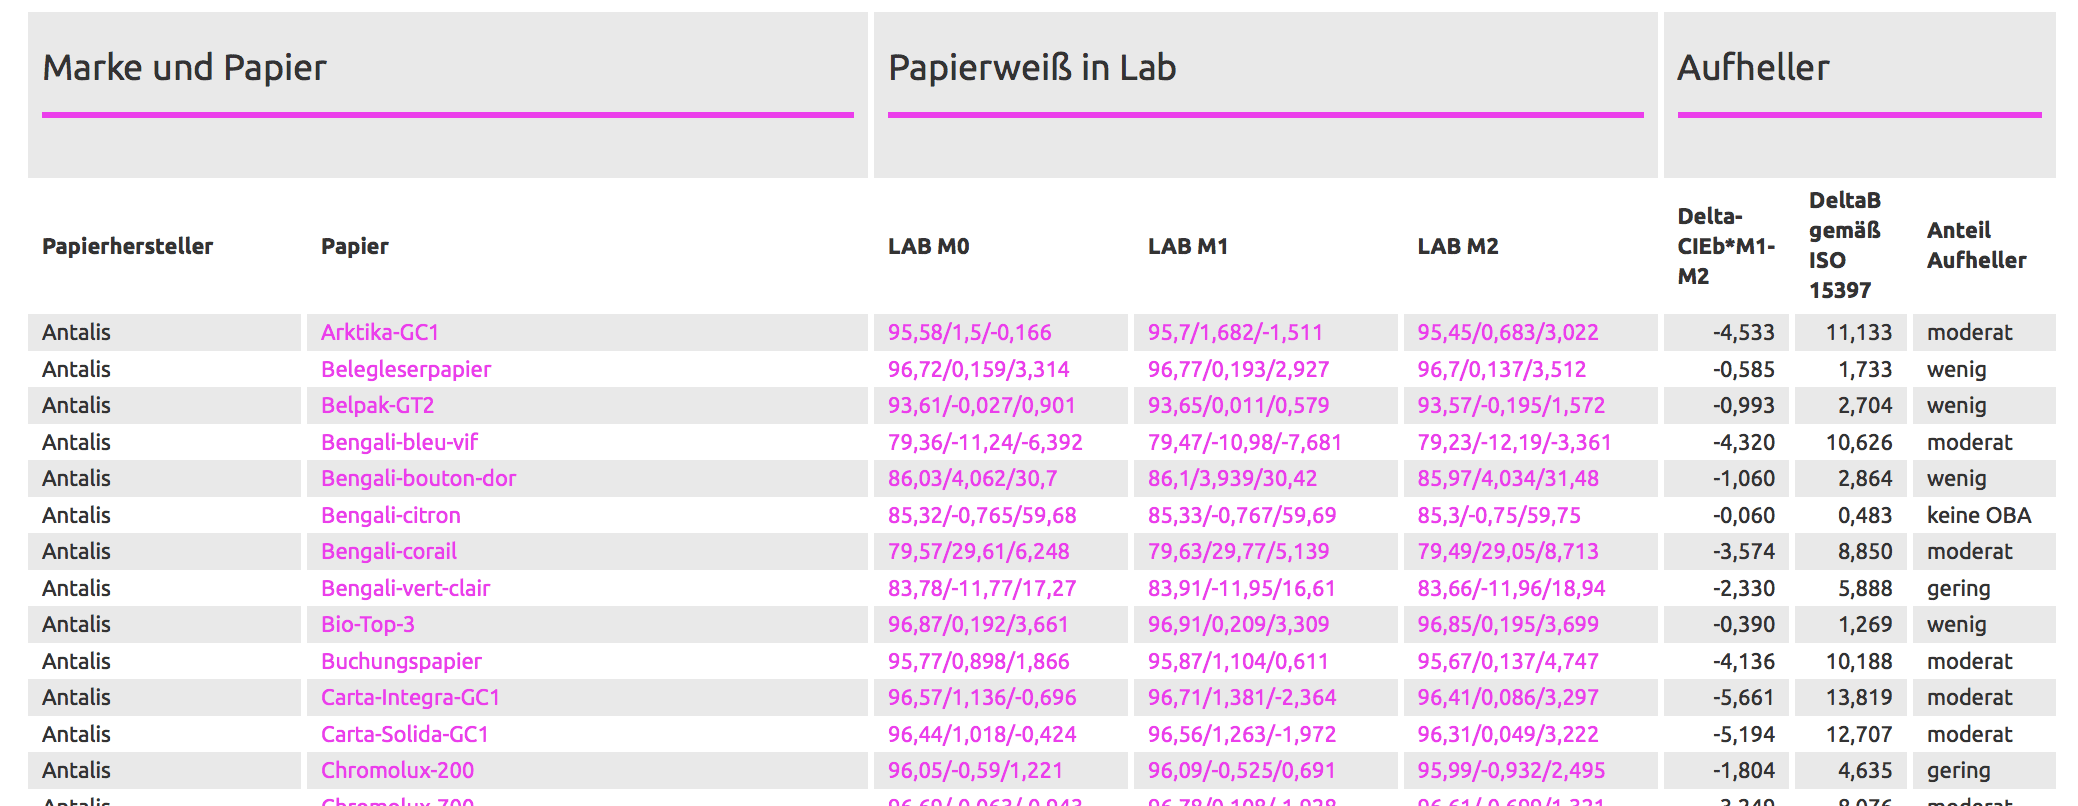 Papīra baltuma tabula proof.de, kurā norādītas visu lielāko papīra ražotāju un tiešsaistes printeru papīra baltuma vērtības.